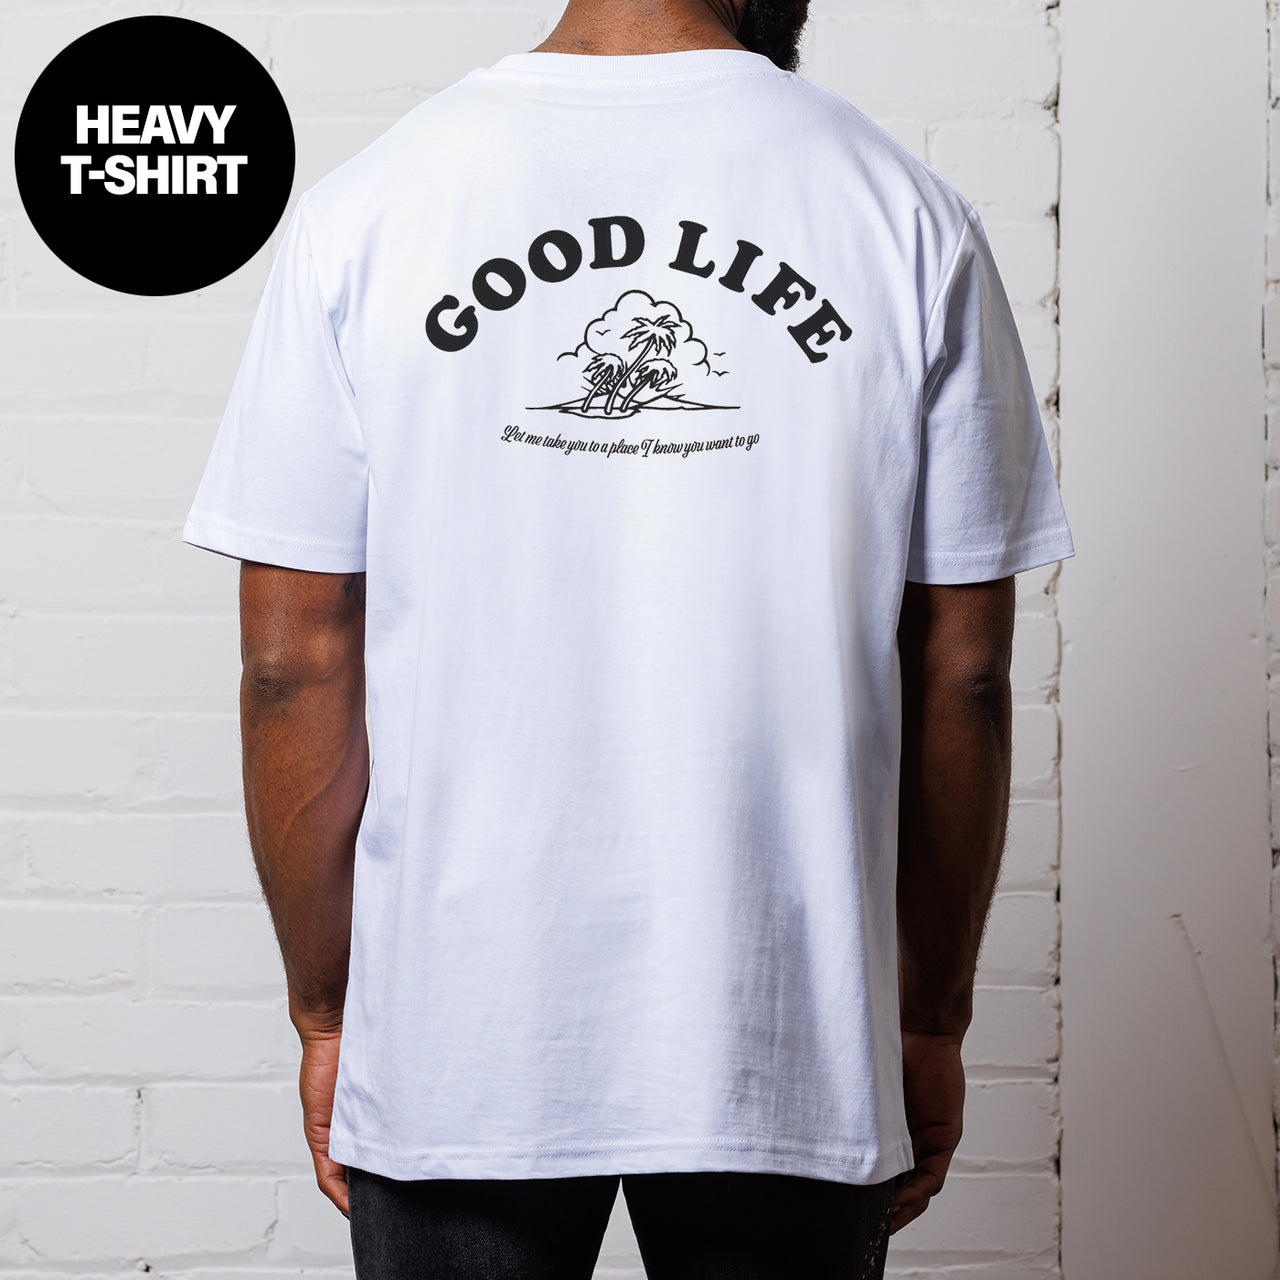 Good Life - Heavy Tshirt - White